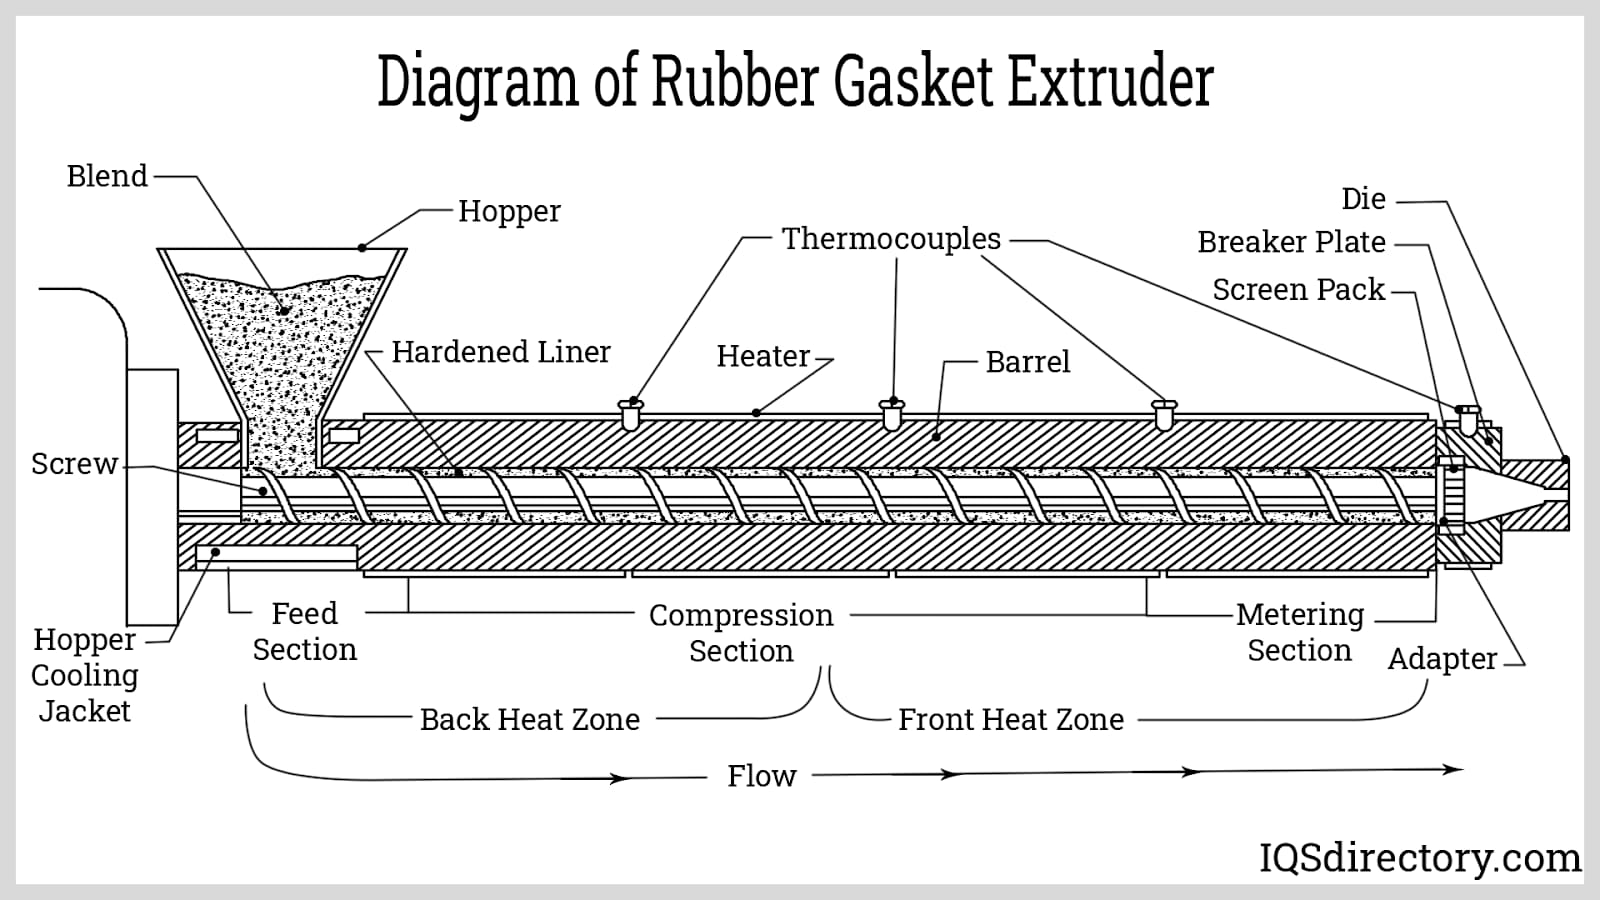 Diagram of Rubber Gasket Extruder